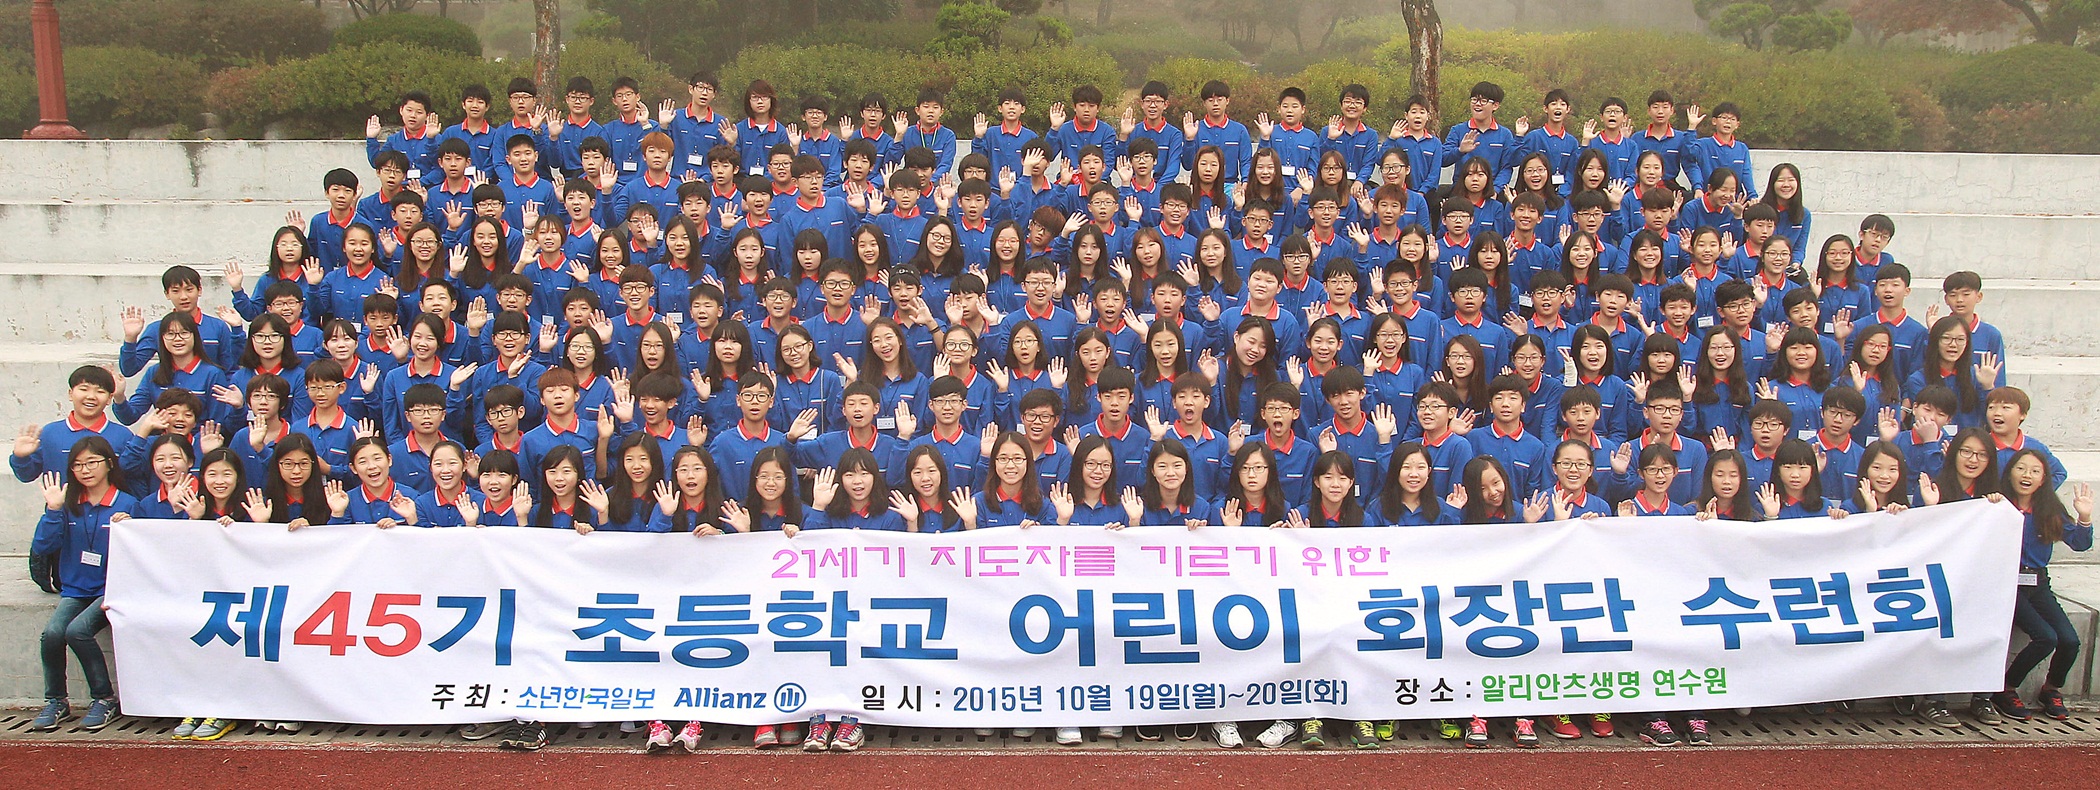 알리안츠생명, 초등학교 어린이 회장단 수련회 개최 [2015-10-20]   